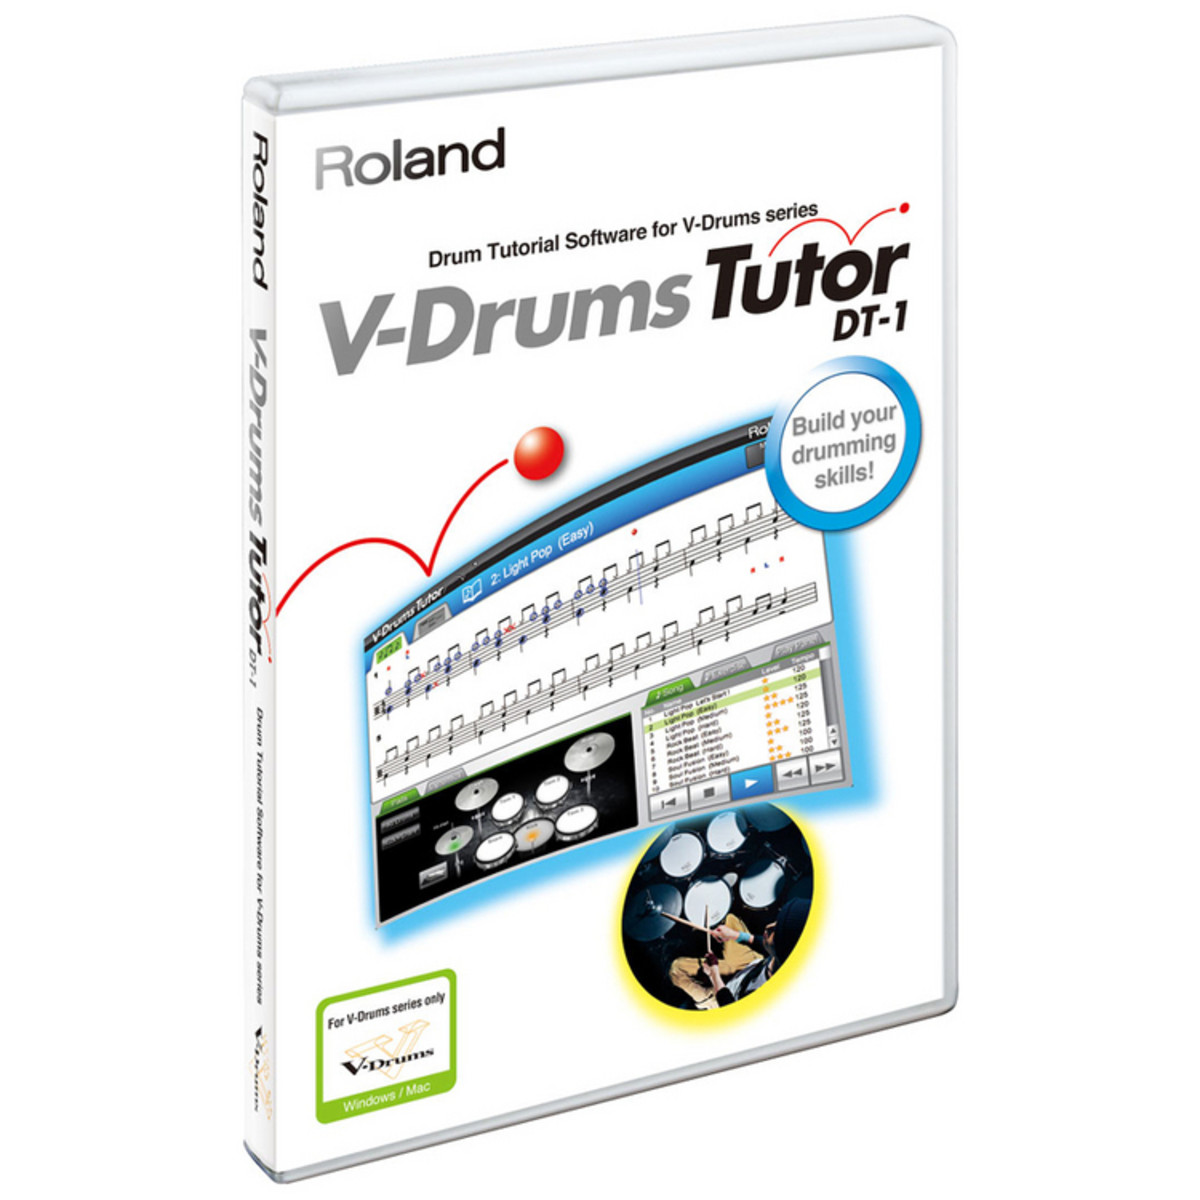 Dt-1 v-drums tutor download for pc